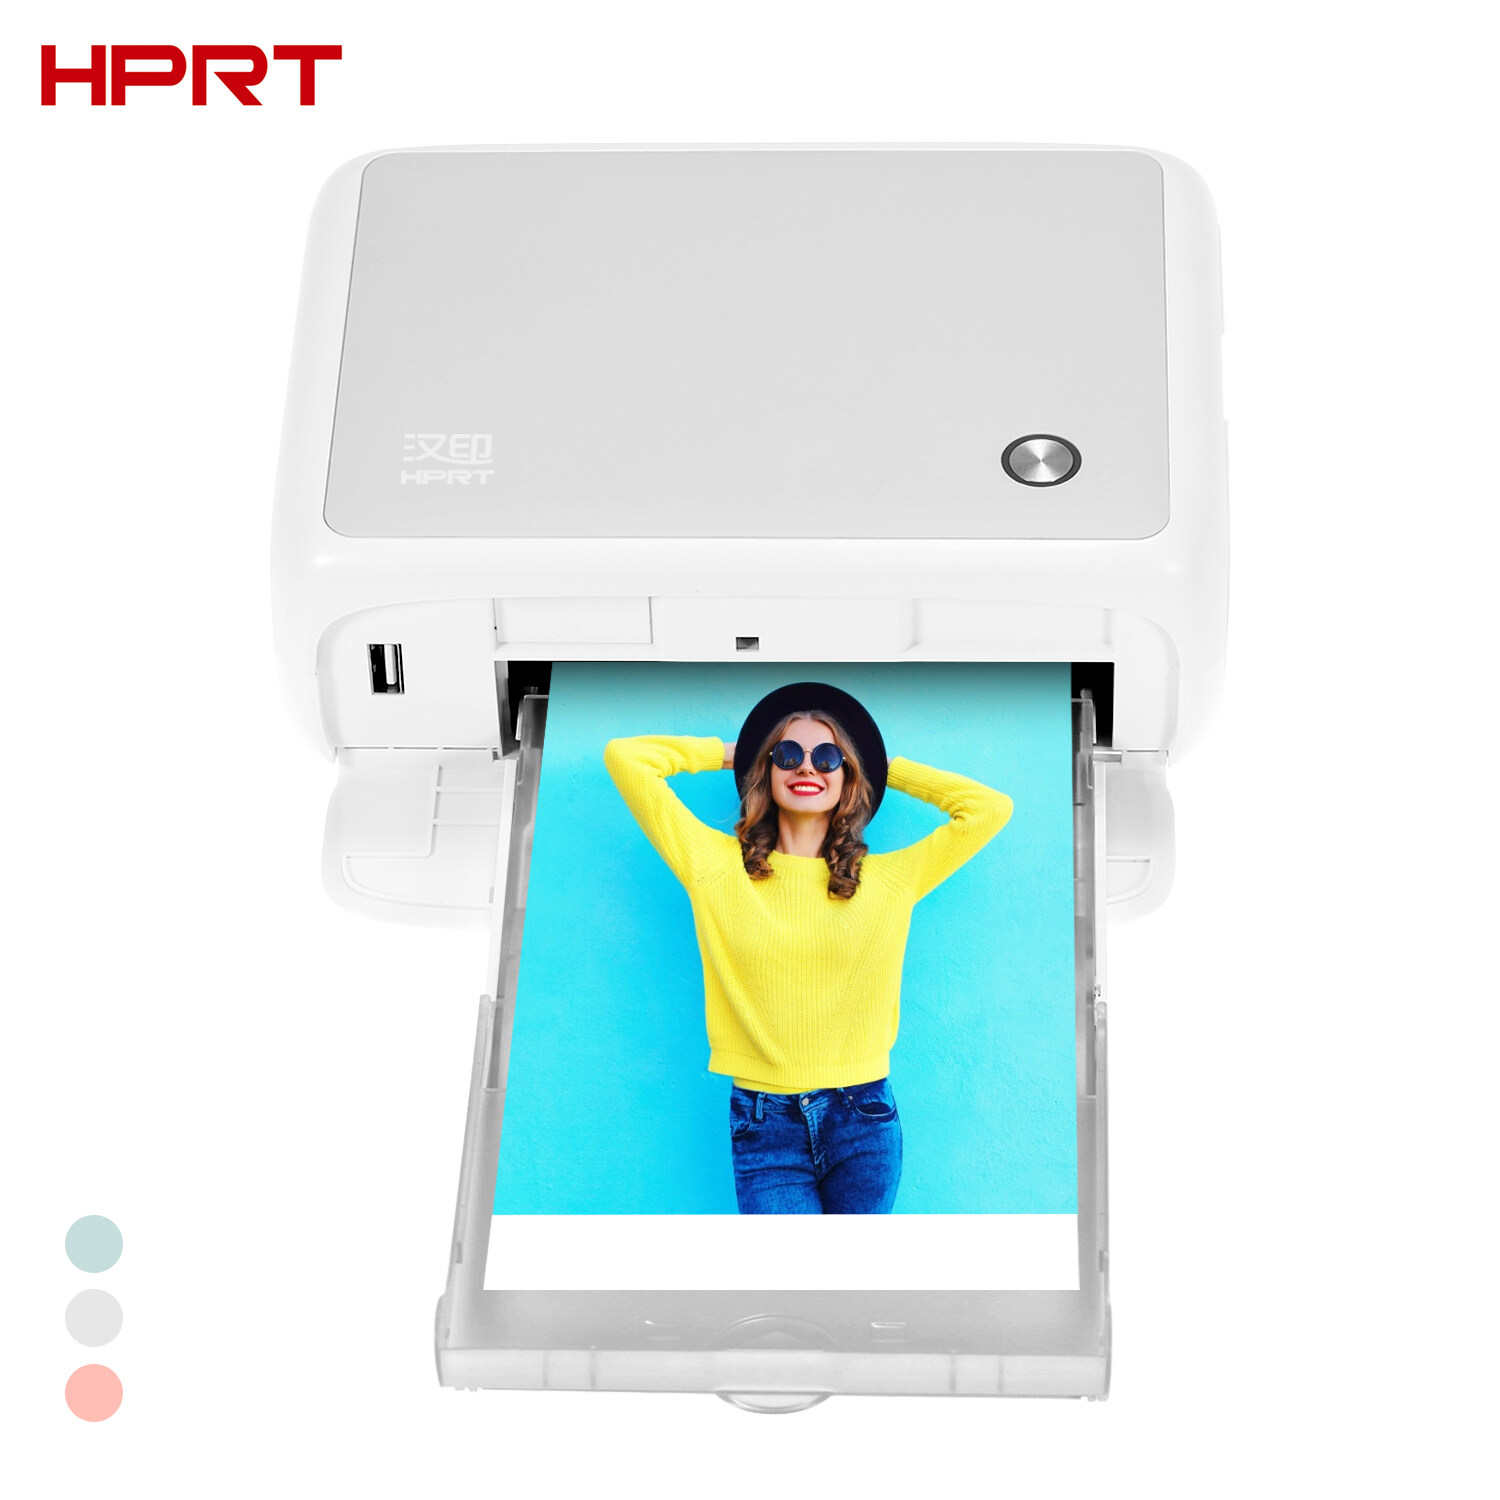 HPRT CP4000Lสีเครื่องพิมพ์ภาพเครื่องพิมพ์พกพาเล็กแบบใช้ภายในบ้านความร้อนระเหิดเครื่องพิมพ์1Pcตลับผงหมึกสี & 54แผ่นรูปถ่ายใช้งานร่วมกับสำหรับวินโดว์แอนดรอยด์ไอโอเส